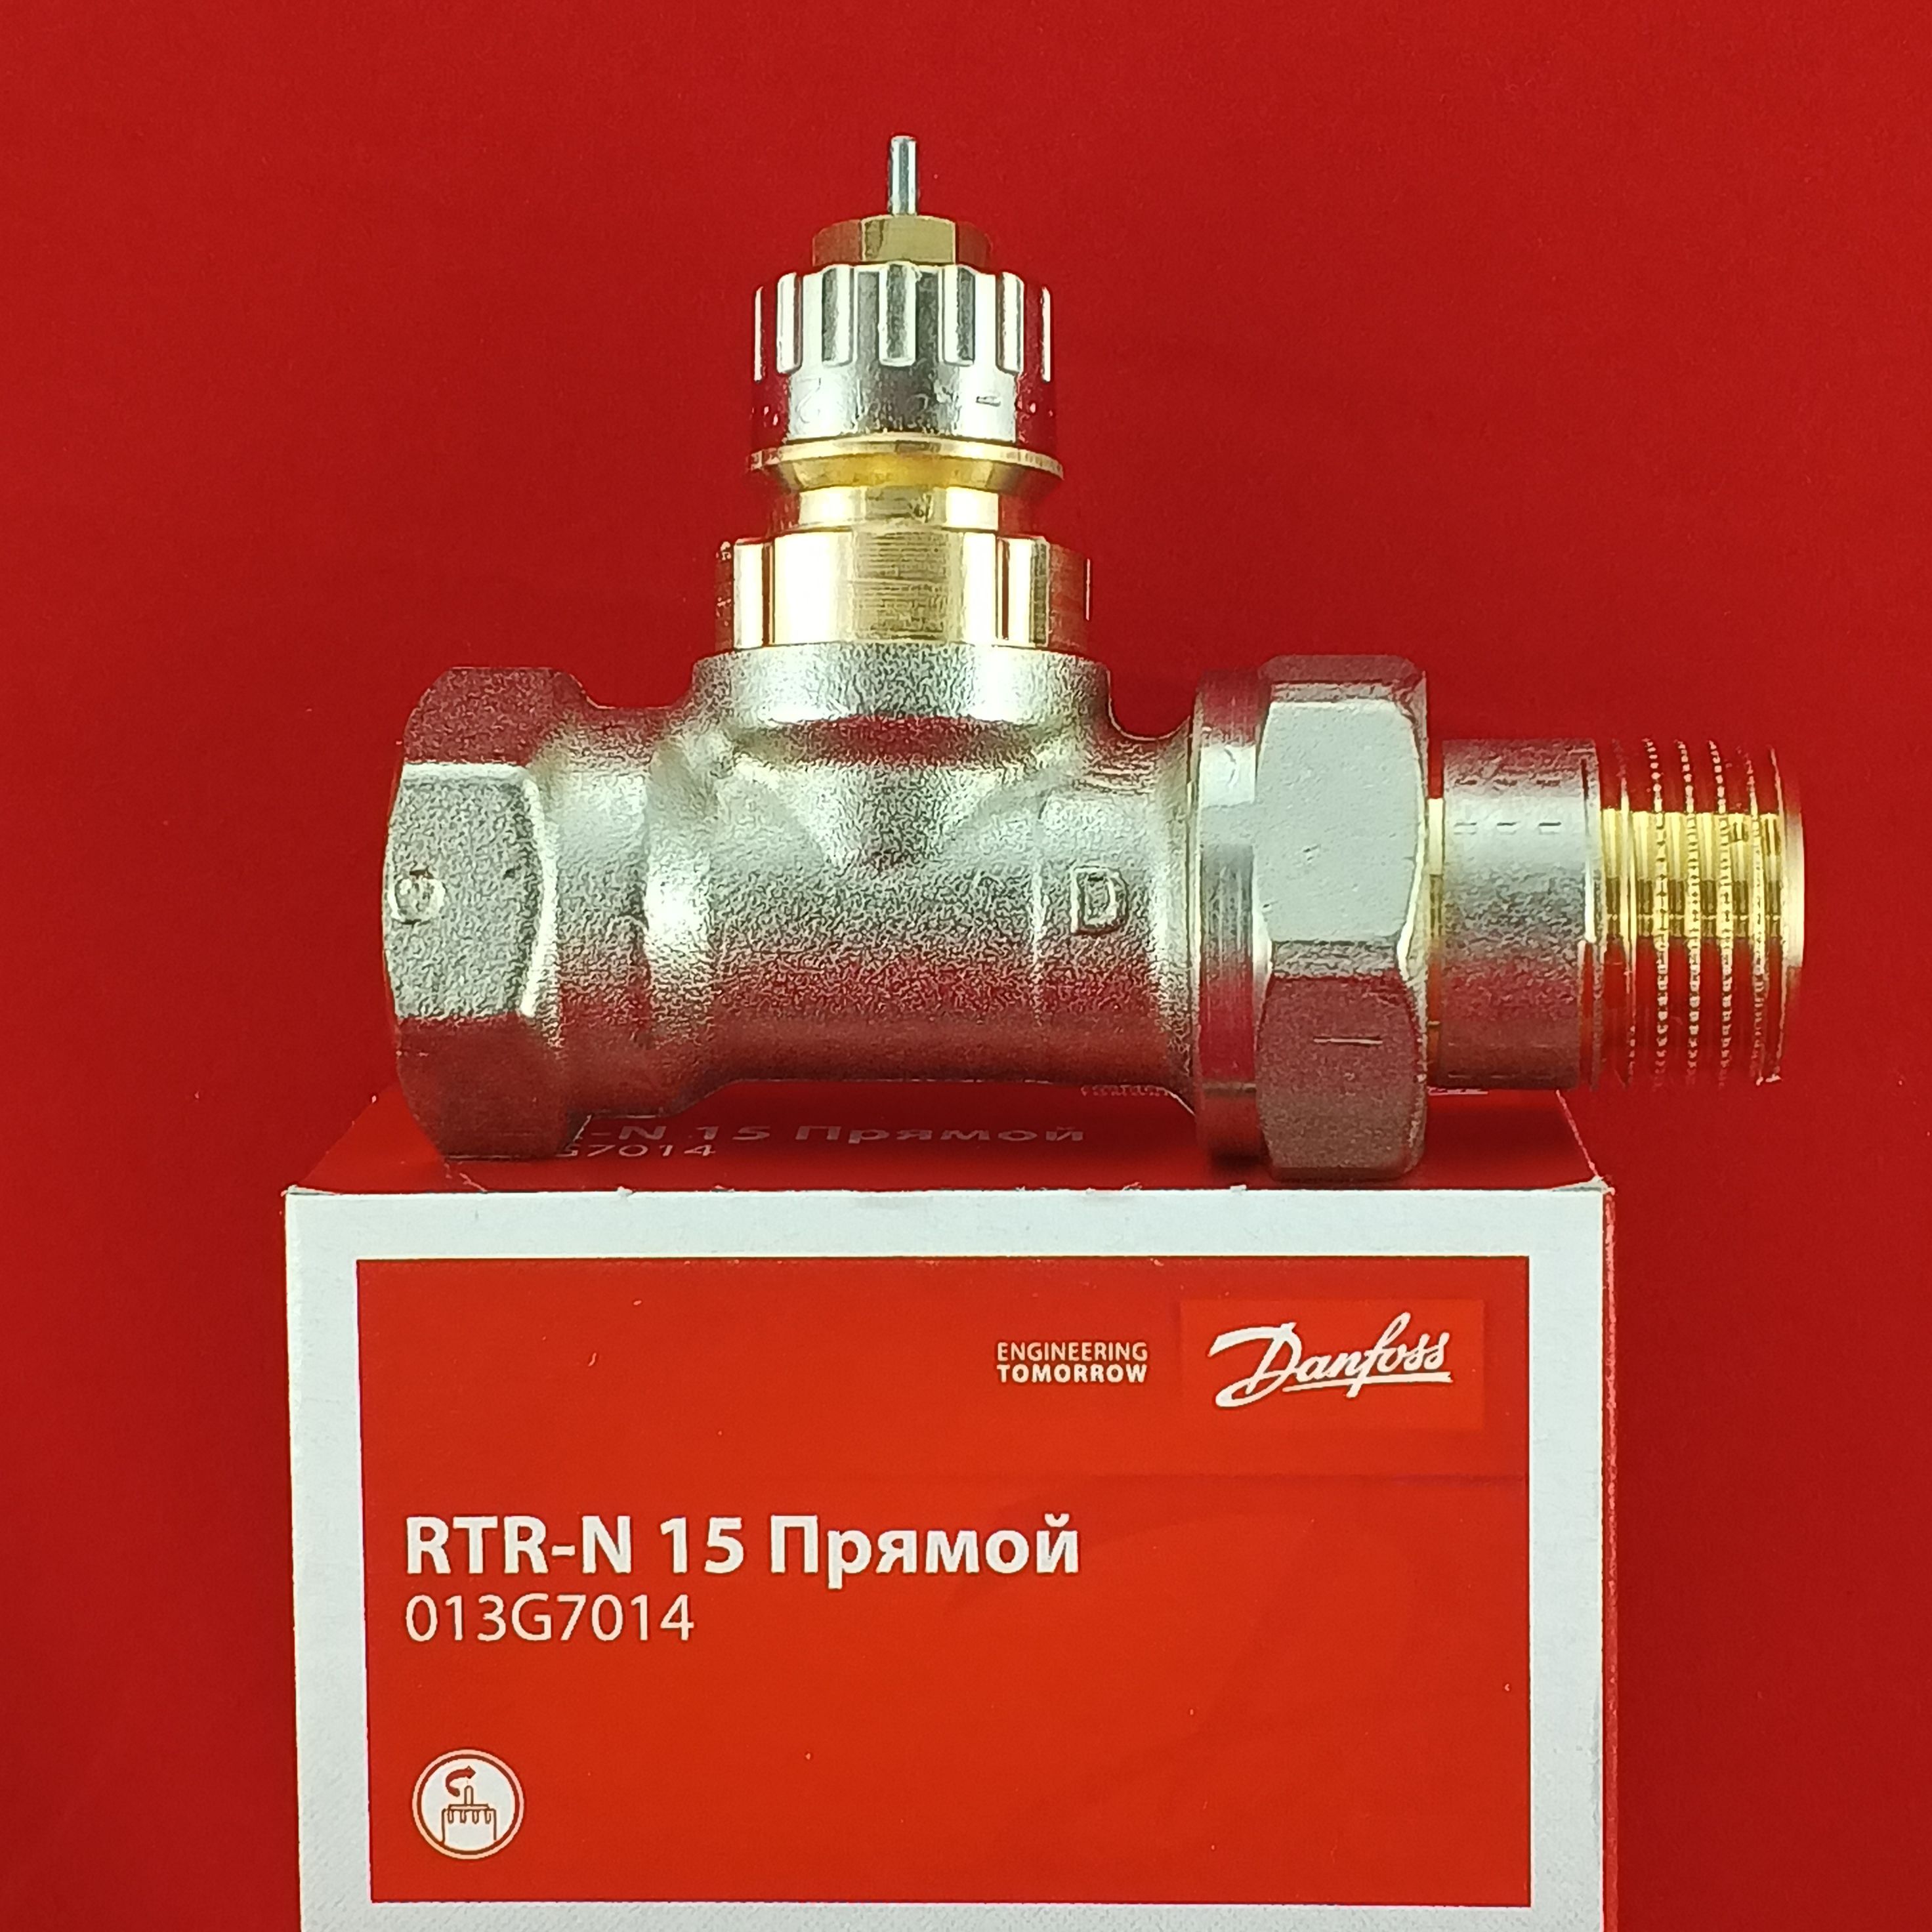 Клапан терморегулятора прямой. 013g7016 RTR-N клапан терморег. 20 Прямой. Клапан прямой RTR-N. Кран RTR-N 15. Терморегуляторный клапан.